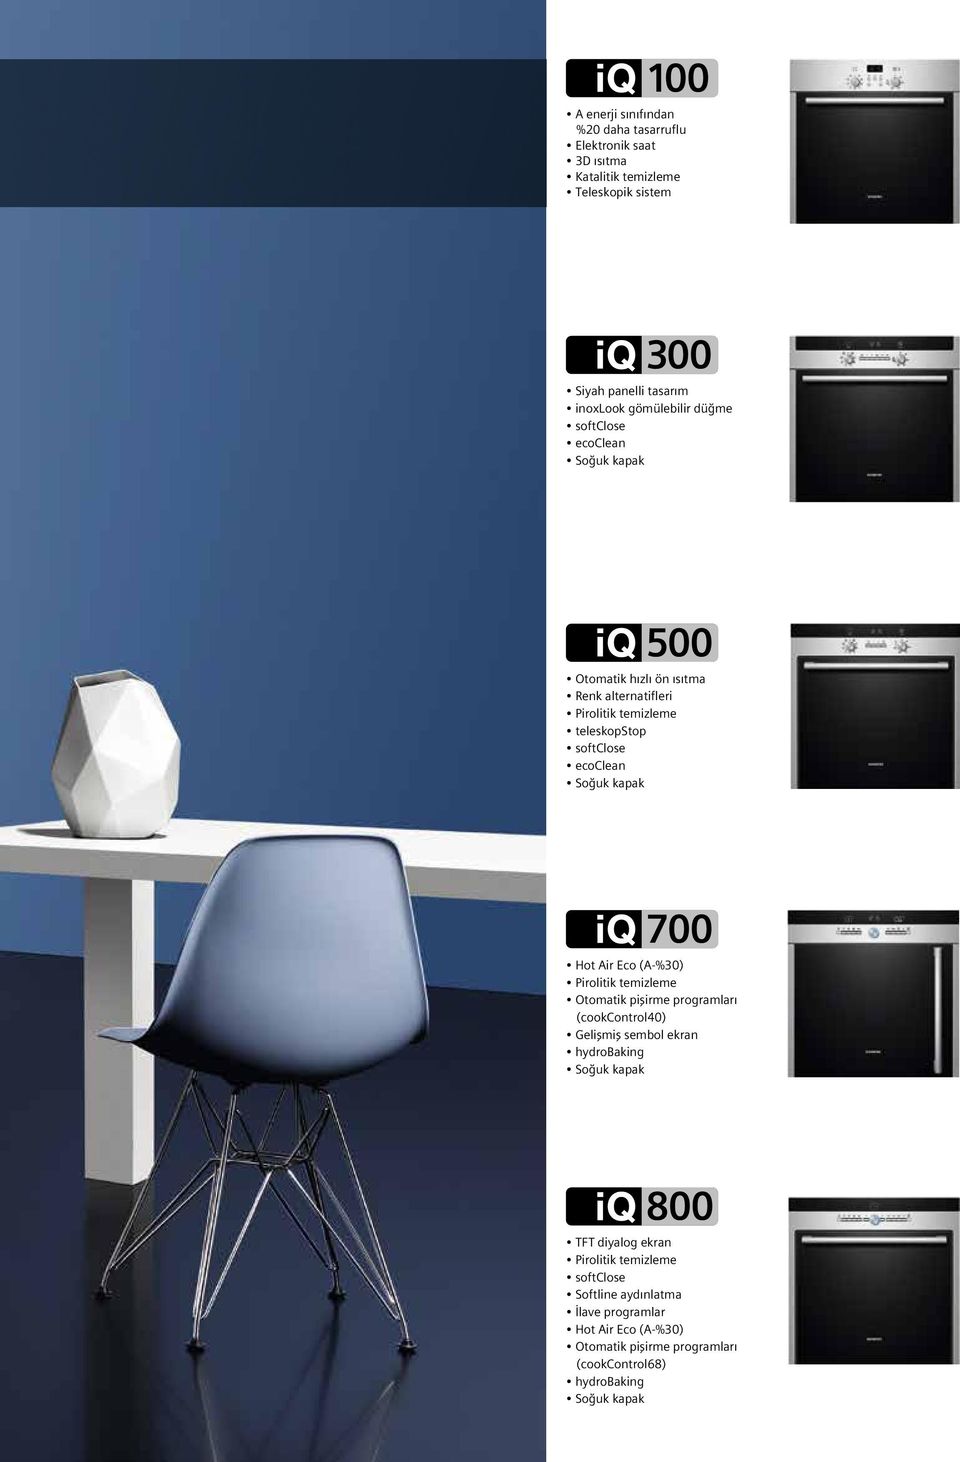 ir Eco (-%30) Pirolitik temizleme Otomatik pişirme programları (cookcontrol40) Gelişmiş sembol ekran hydrobaking Soğuk kapak 800 TFT diyalog ekran